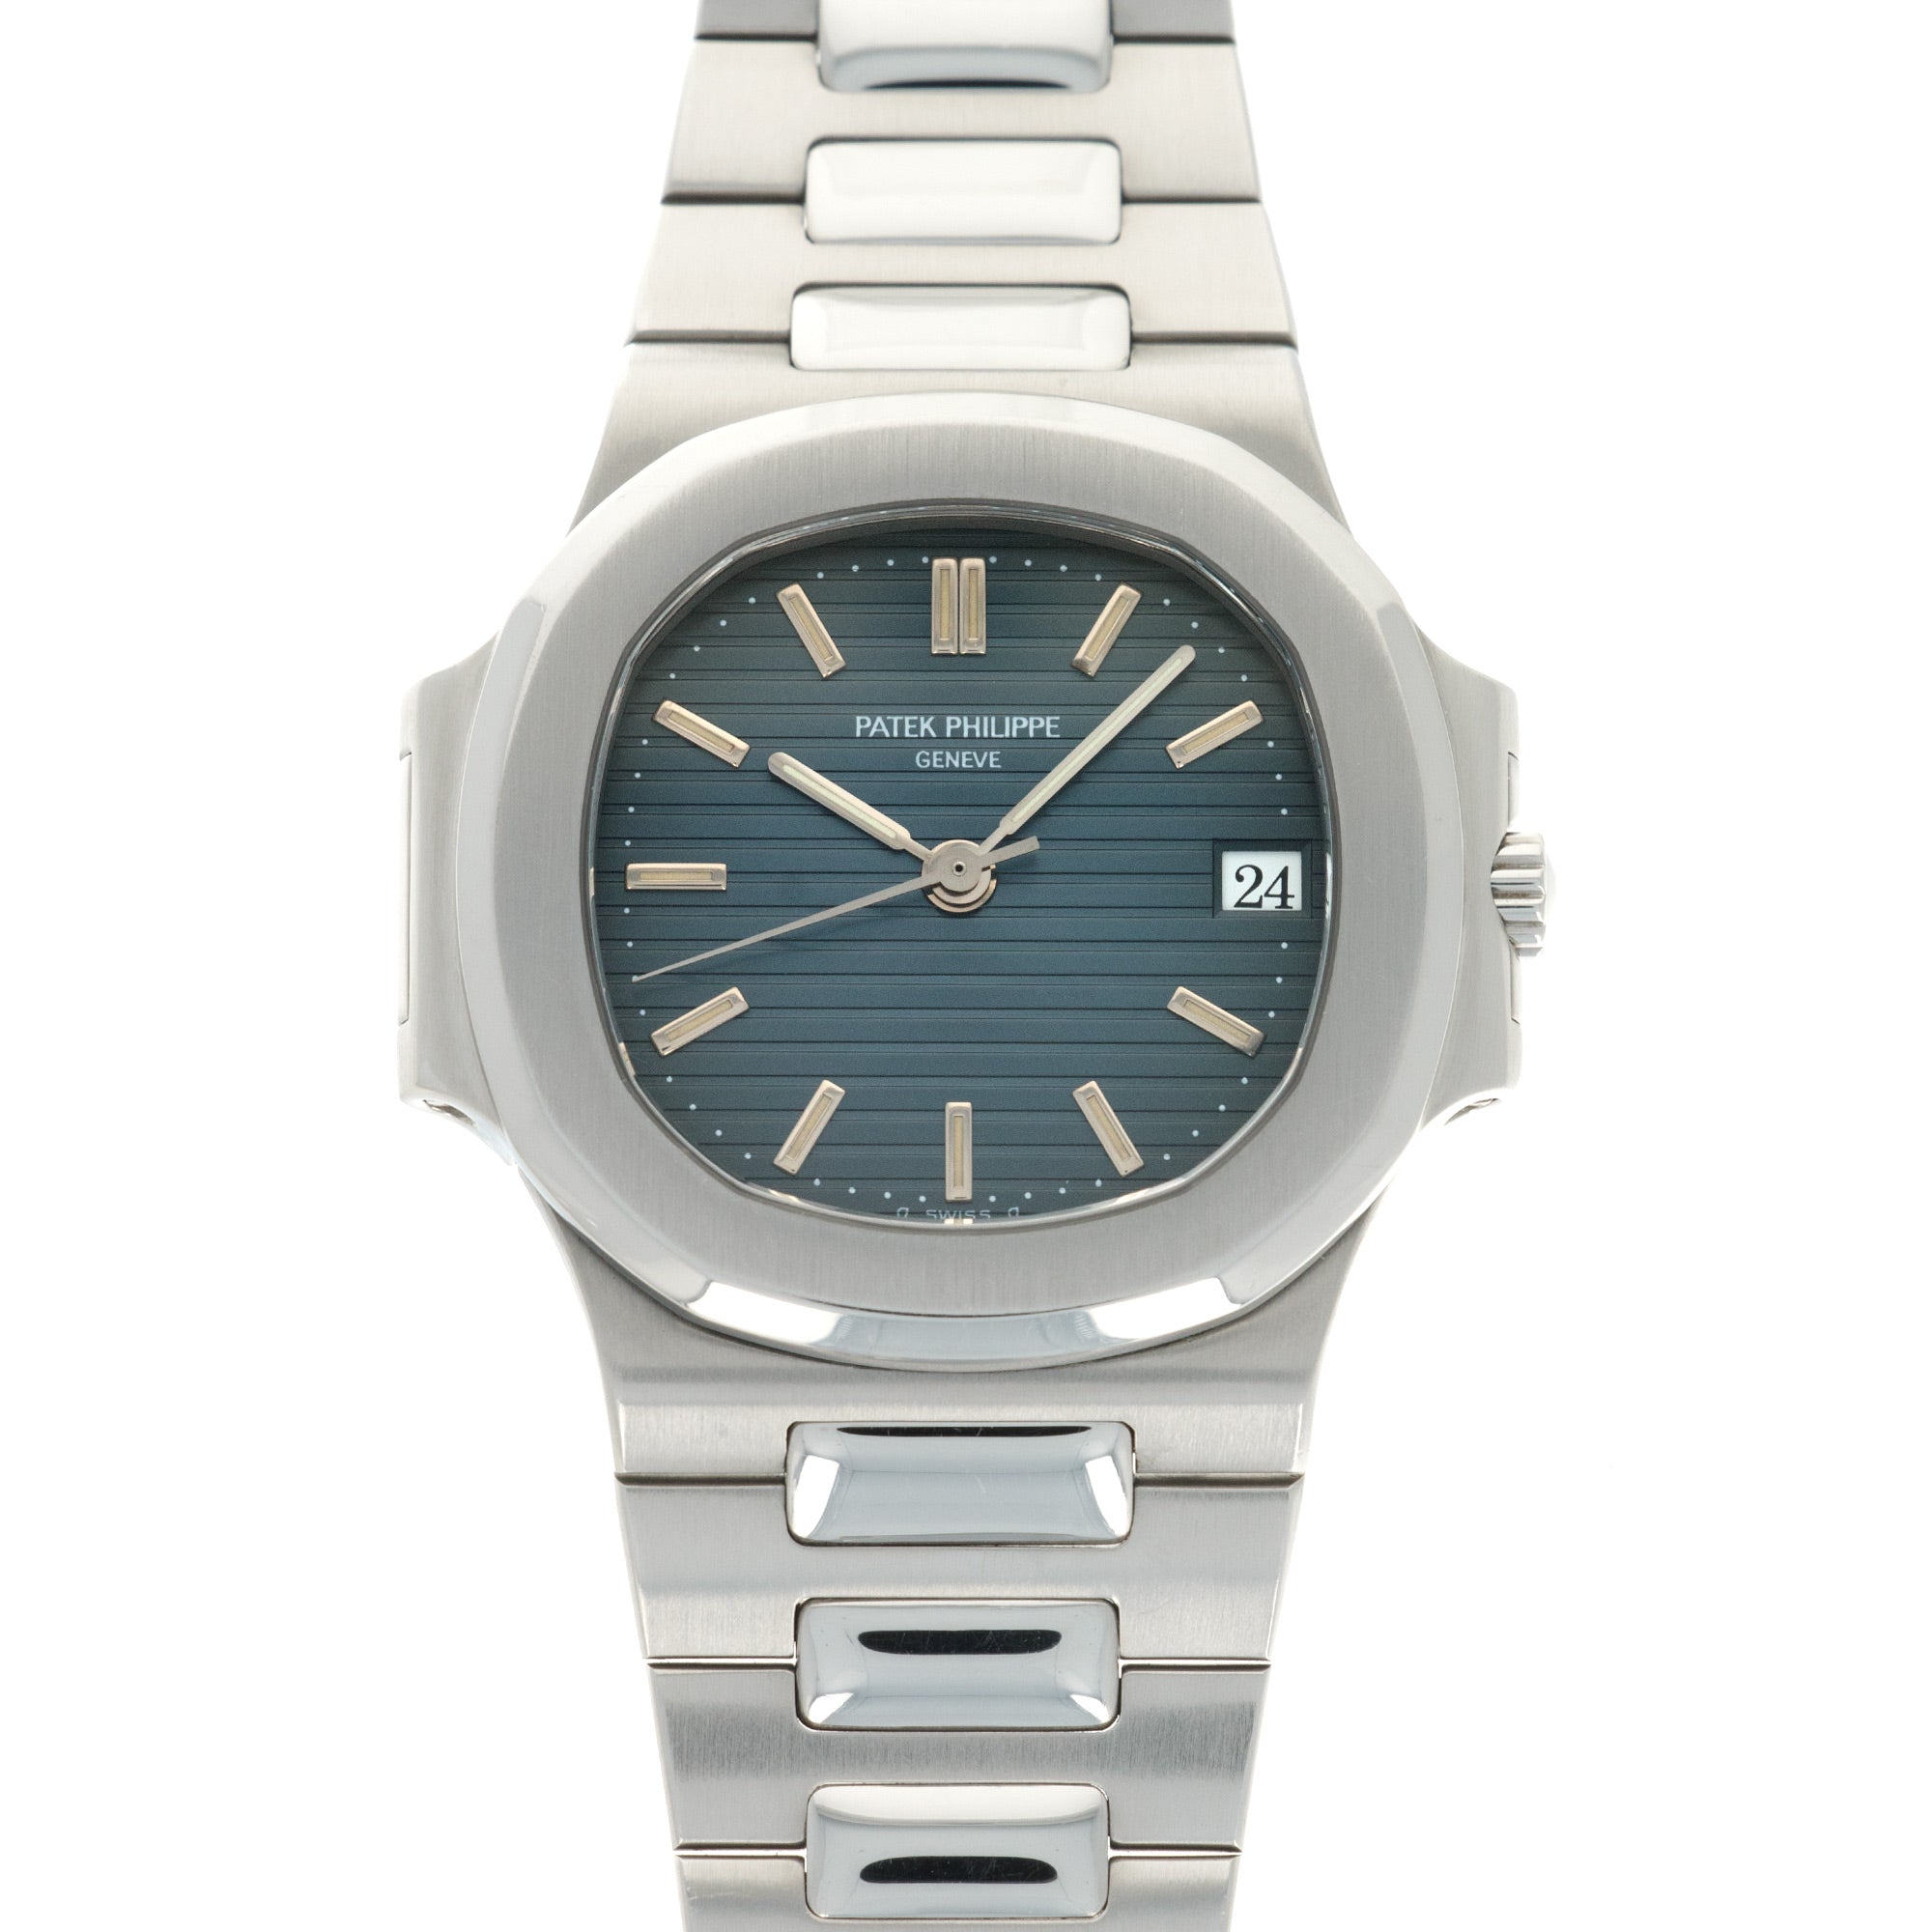 Patek Philippe - Patek Philippe Nautilis Watch, Ref. 3800 - The Keystone Watches